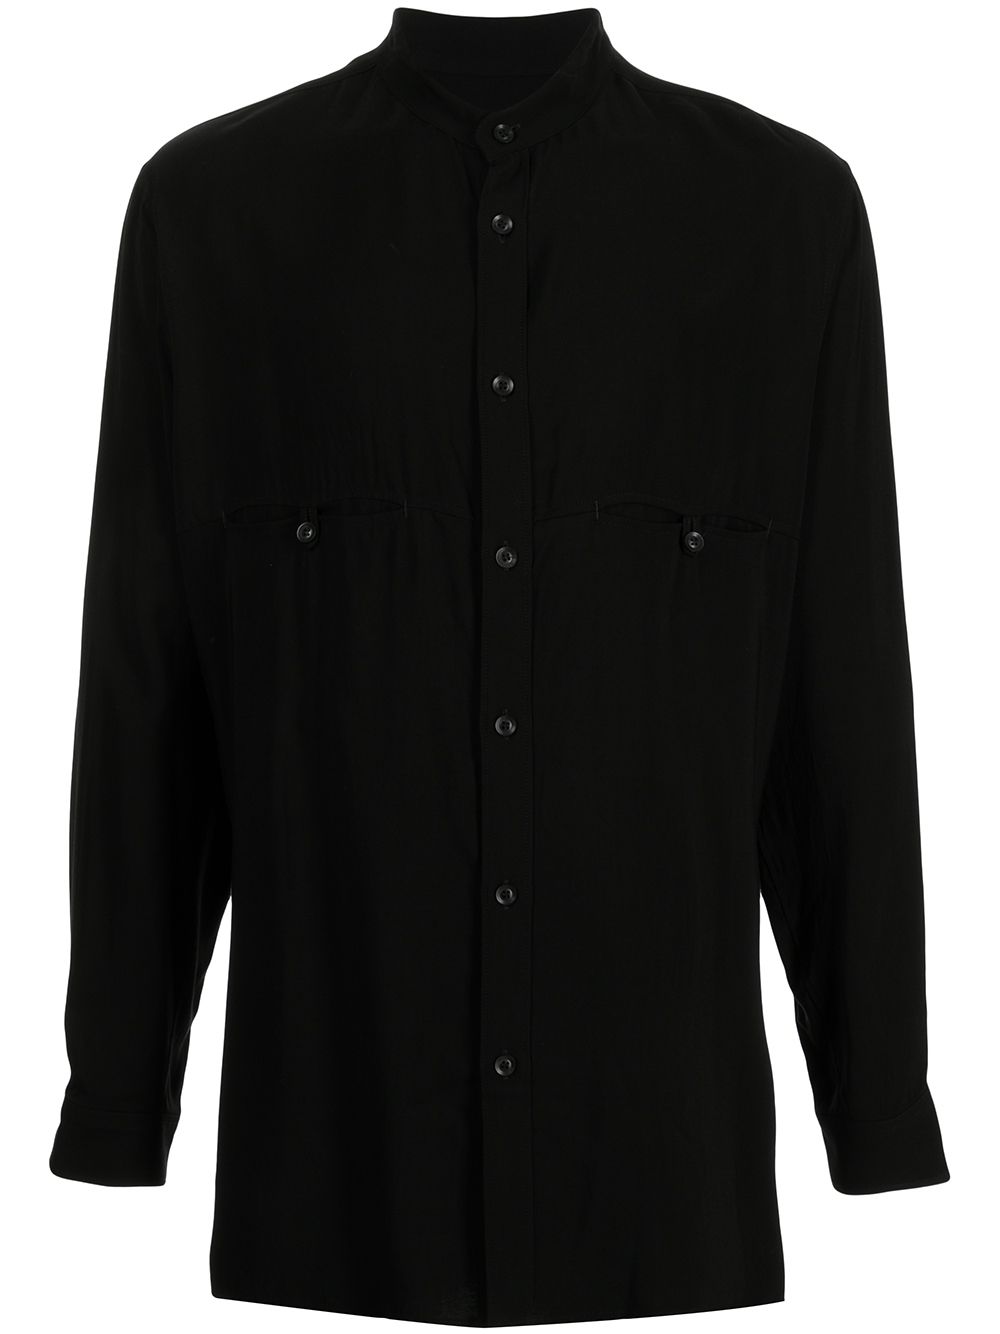 Yohji Yamamoto band-collar long-sleeved shirt